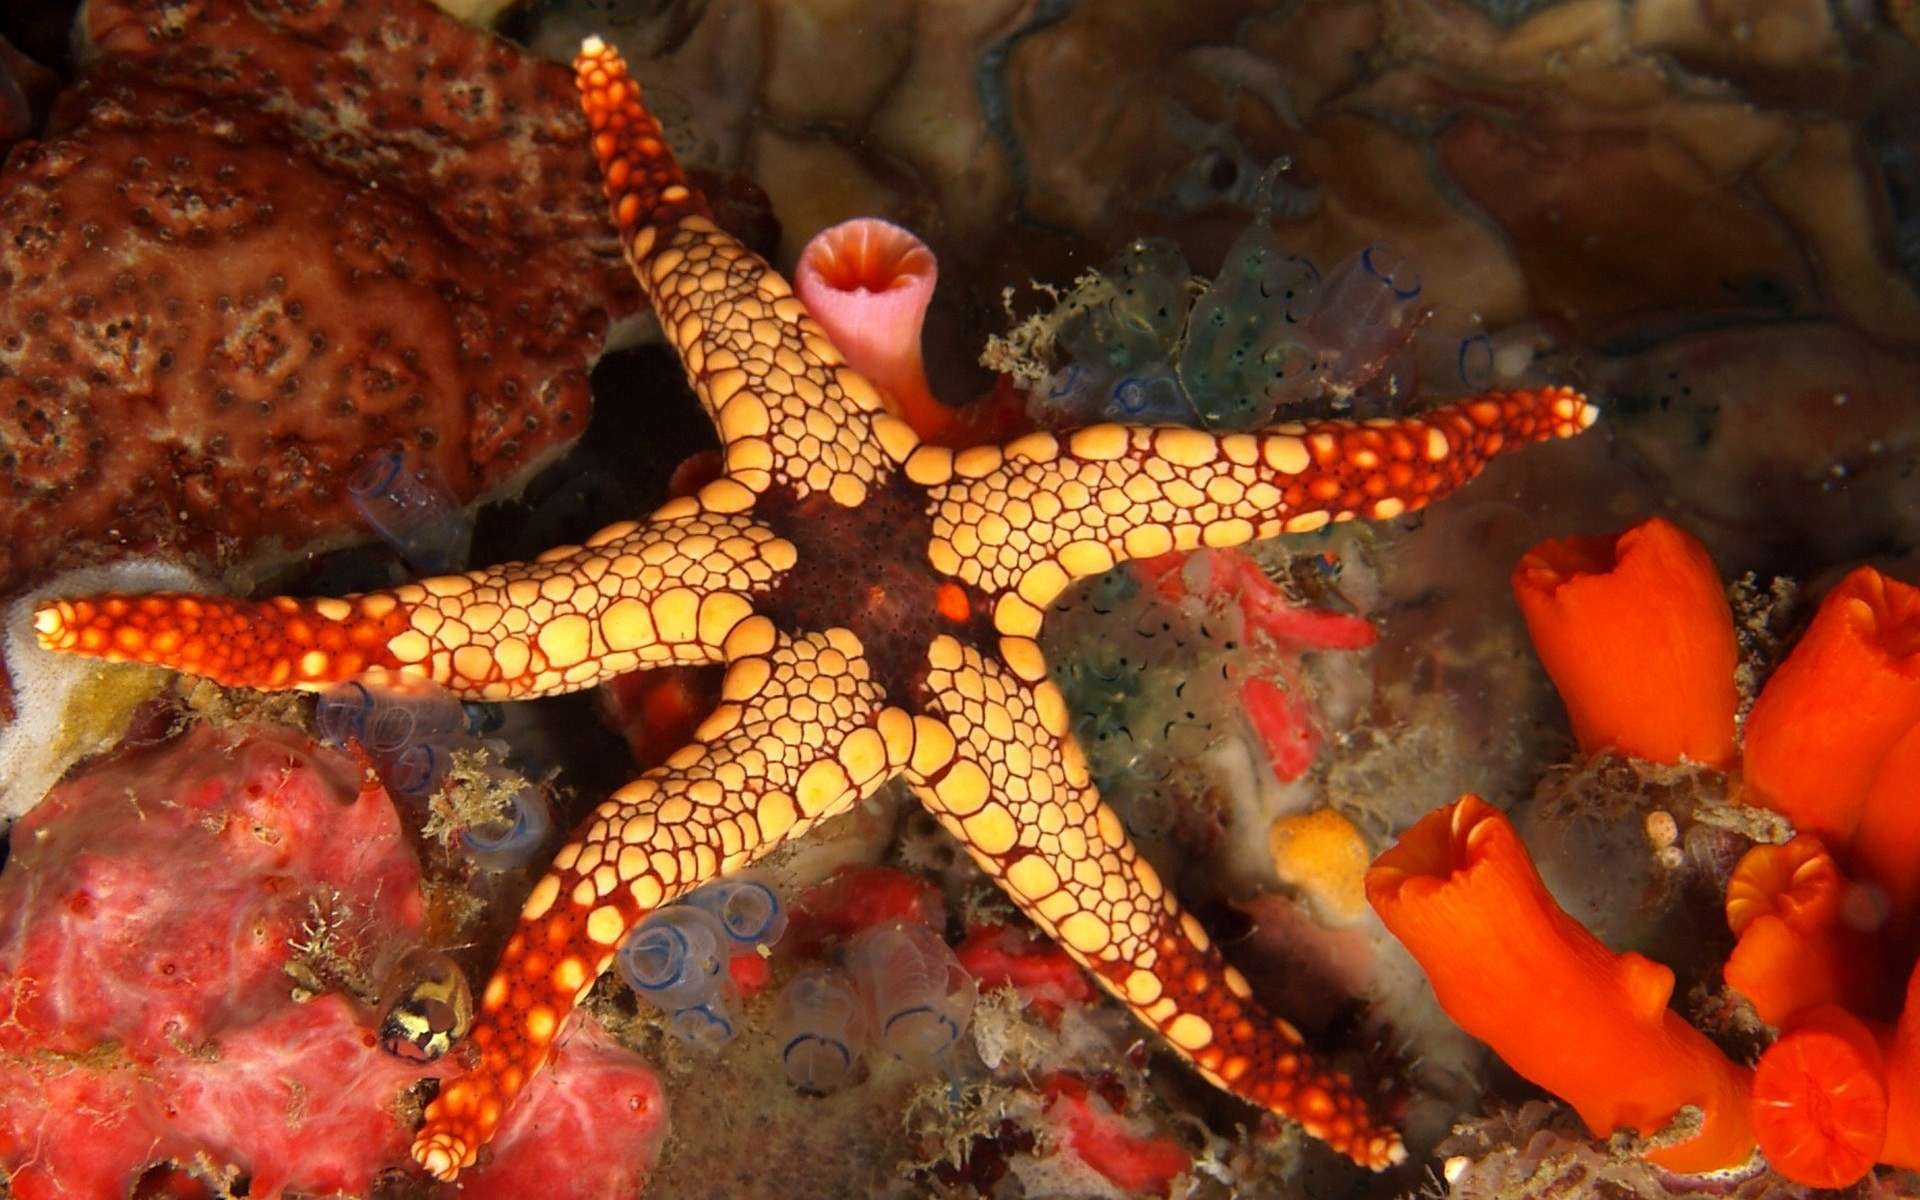 Обитатели моря. Солястер морская звезда. Сдвоенная морская звезда (Iconaster longimanus). Морская звезда зернистый кориастер. Осьминог это бентос.